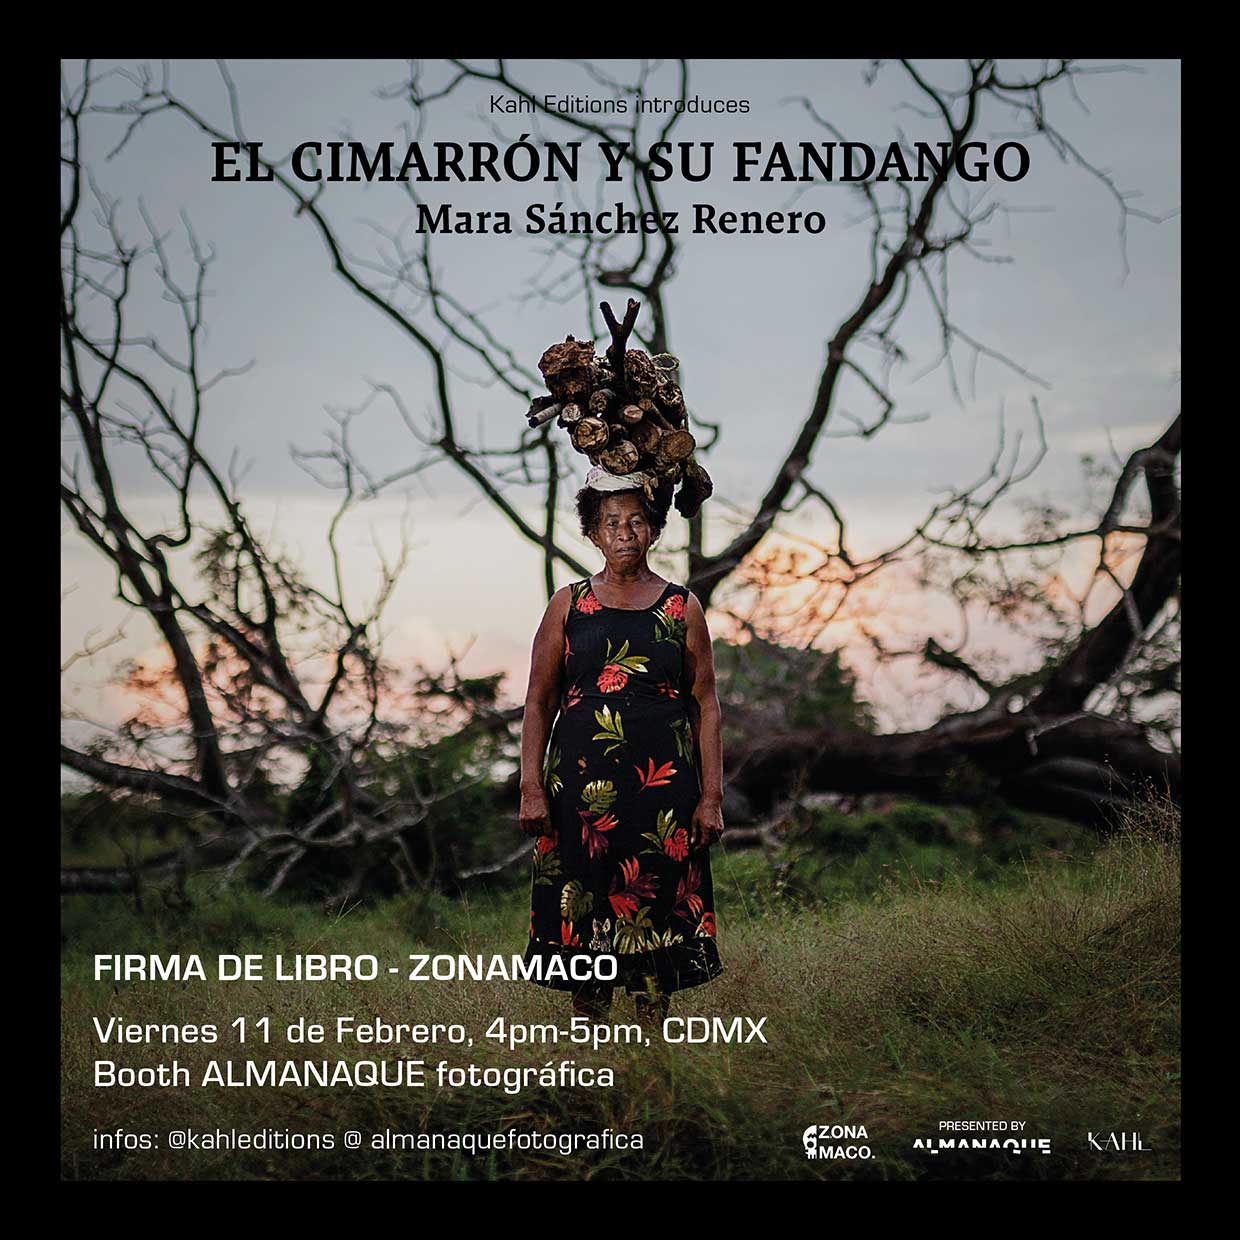 El Cimarron y su Fandango - Mara Sanchez Renero